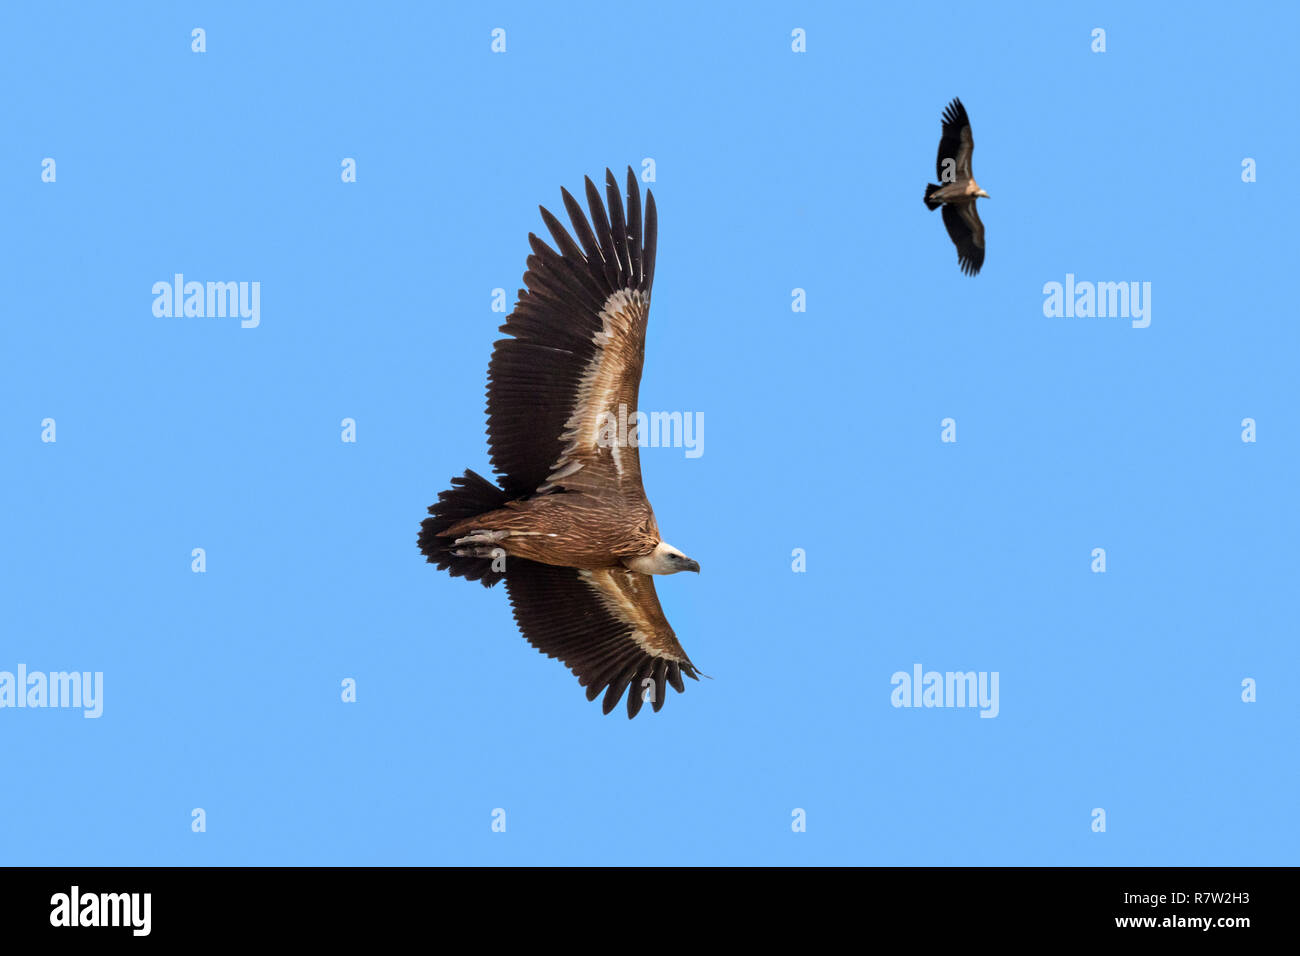 Deux vautours / Eurasian griffon (Gyps fulvus) en vol, le planeur contre le ciel bleu Banque D'Images